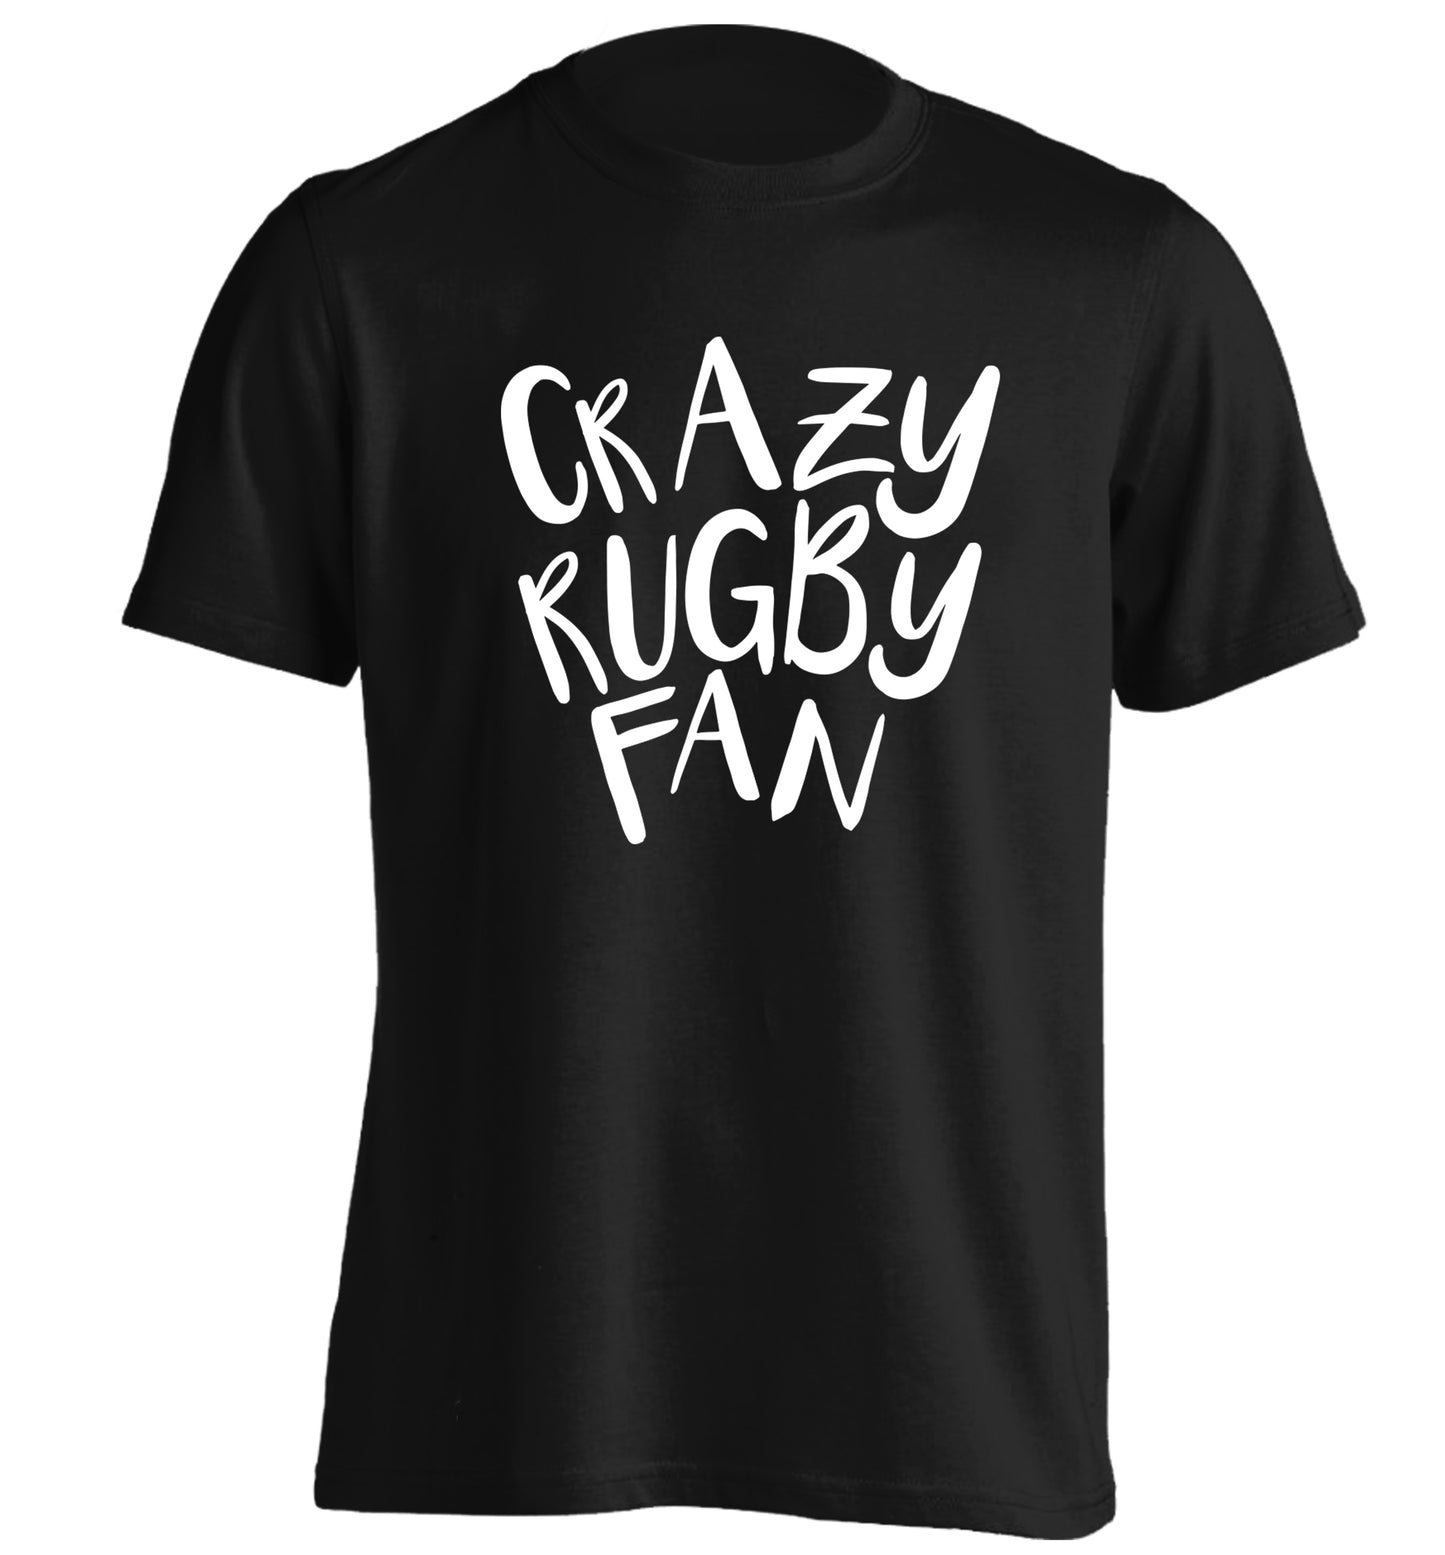 Crazy rugby fan adults unisex black Tshirt 2XL